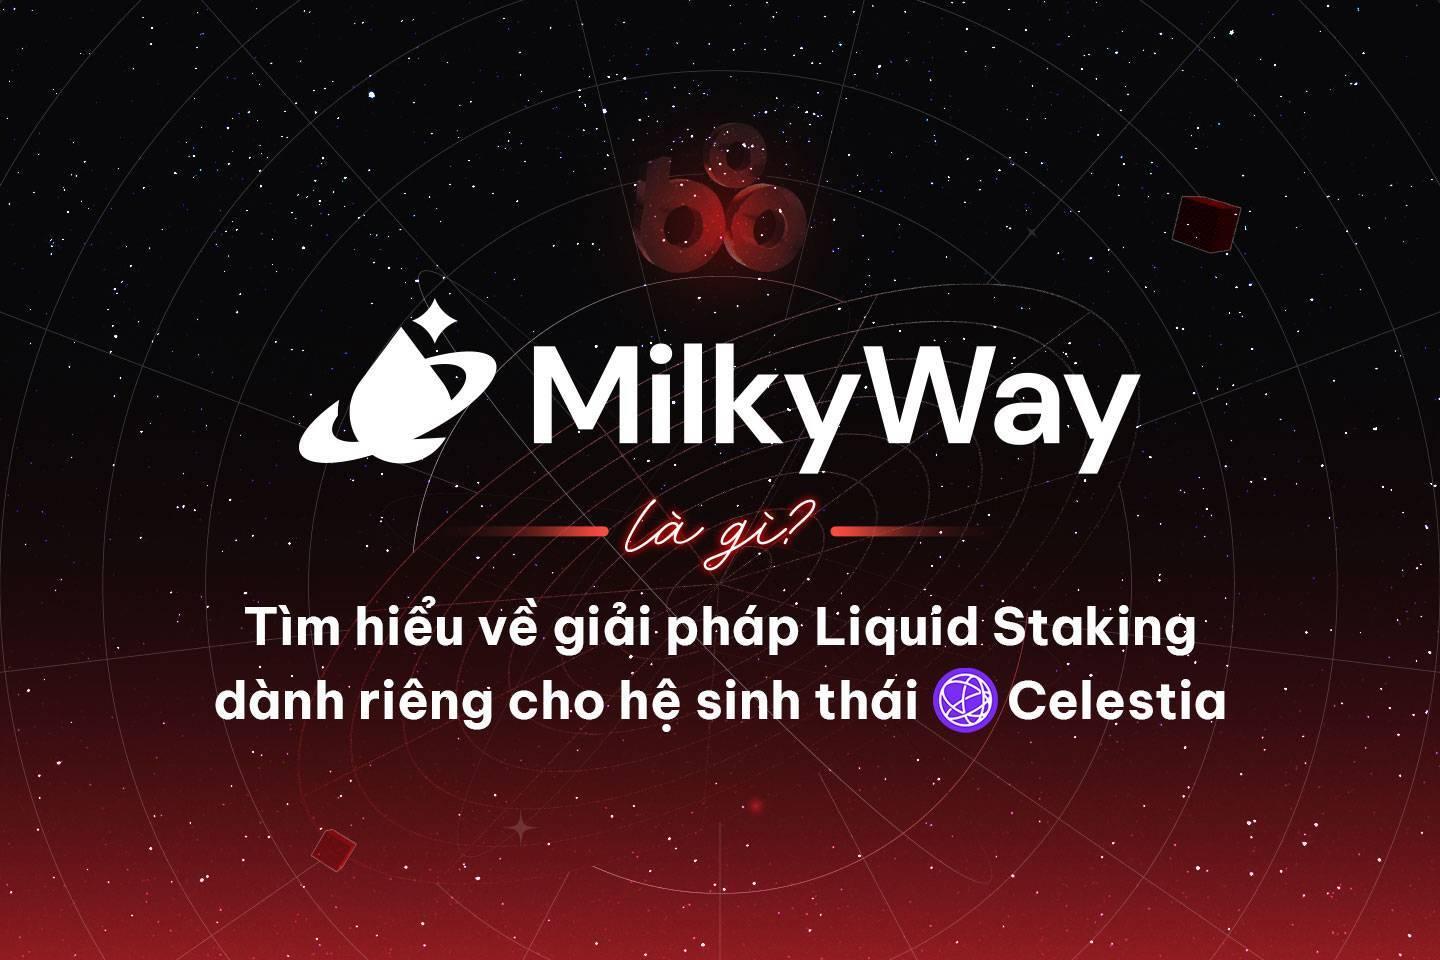 milkyway-la-gi-tim-hieu-ve-giai-phap-liquid-staking-danh-rieng-cho-he-sinh-thai-celestia